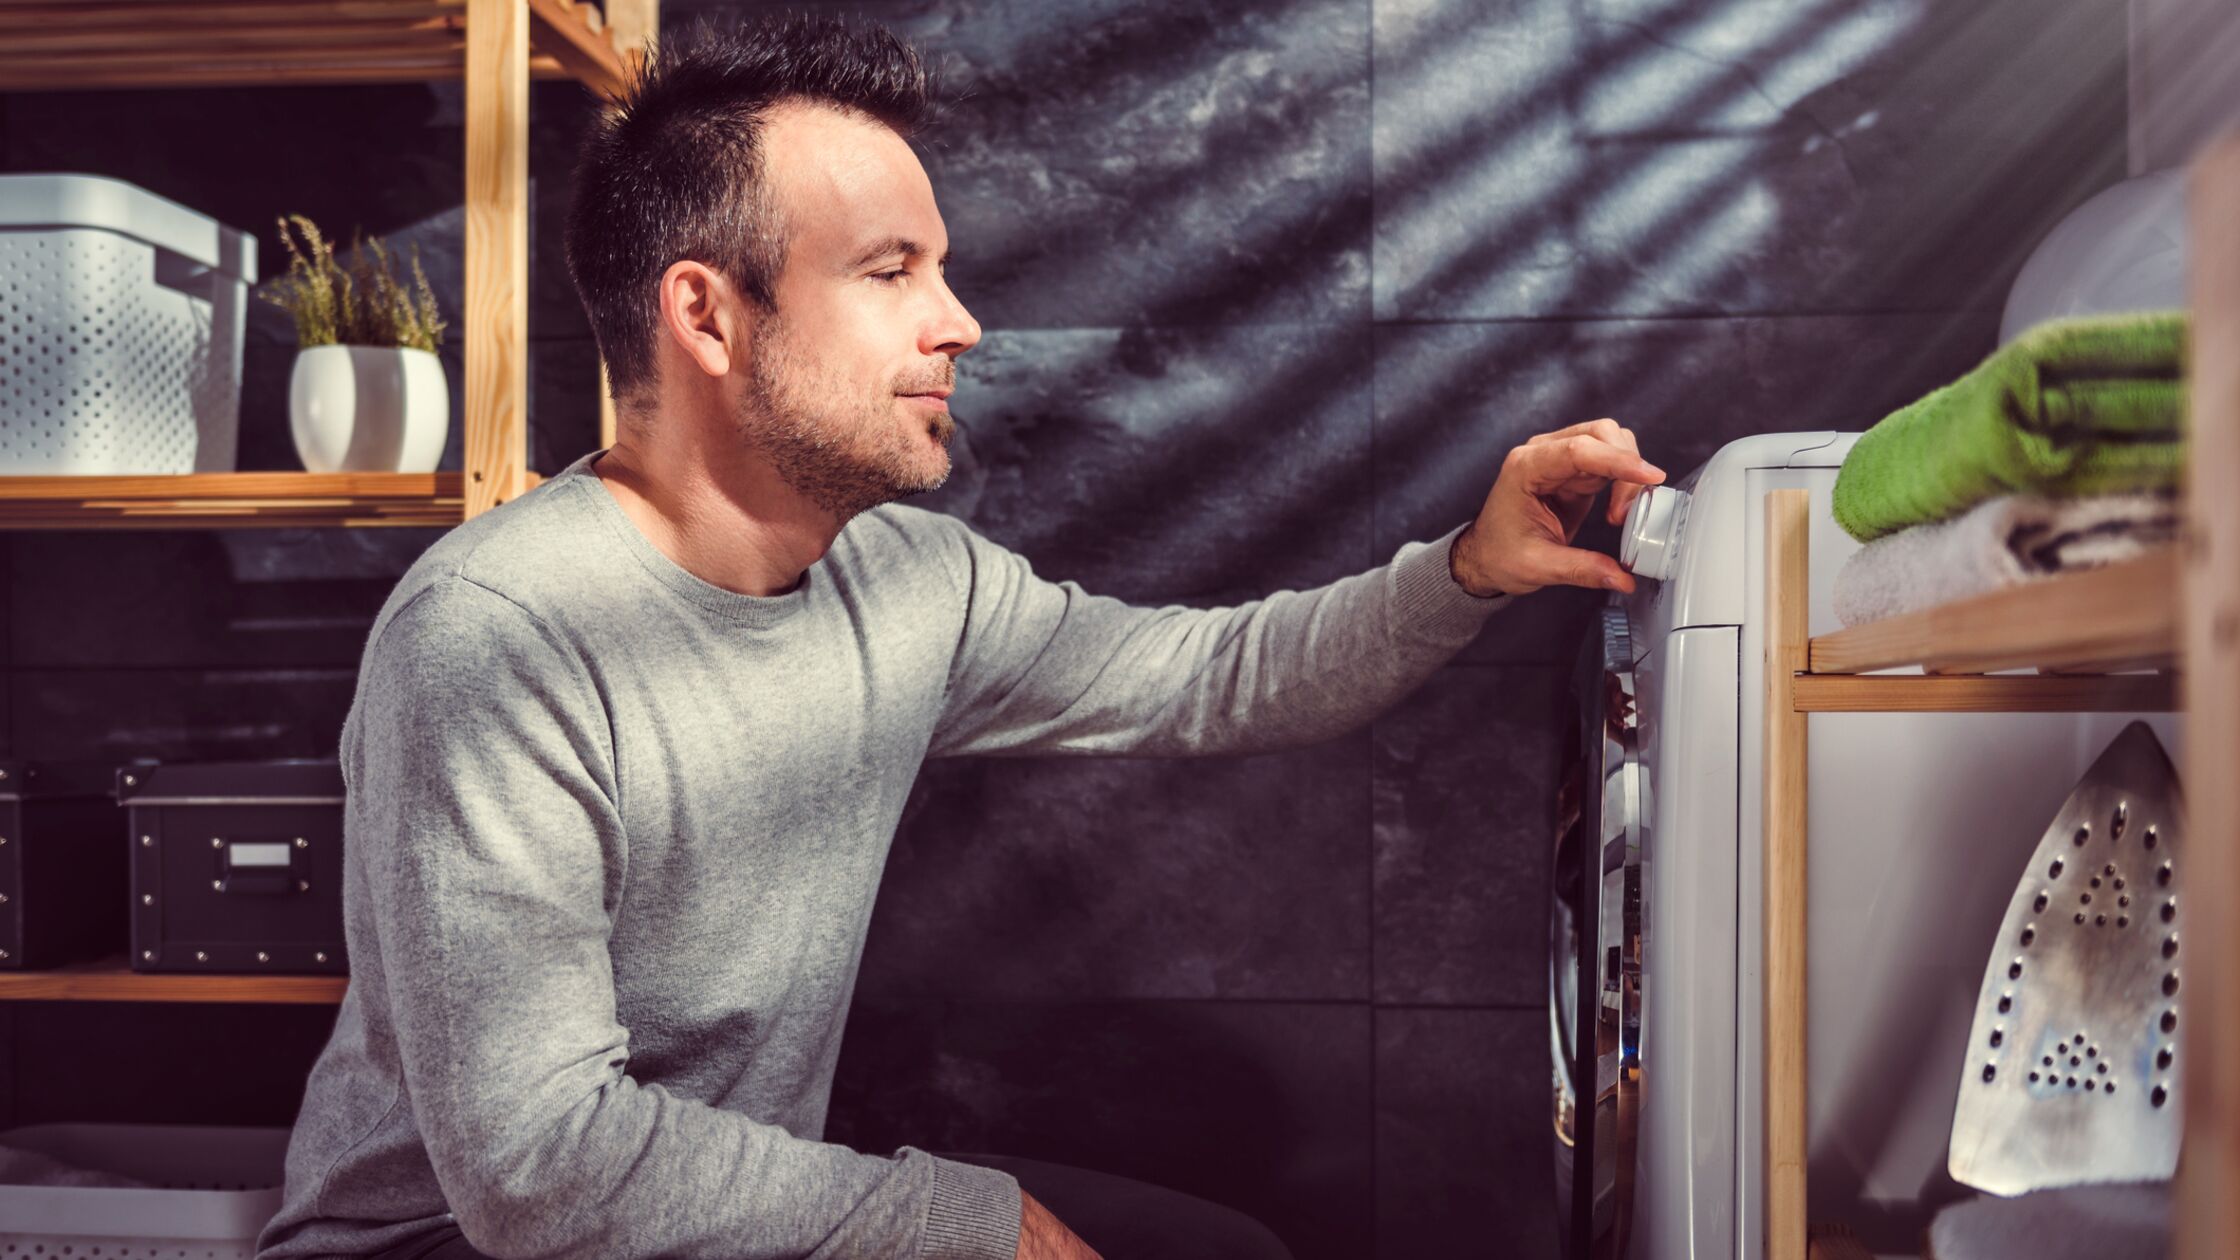 Mann kniet vor einer Waschmaschine und stellt Temperatur ein.